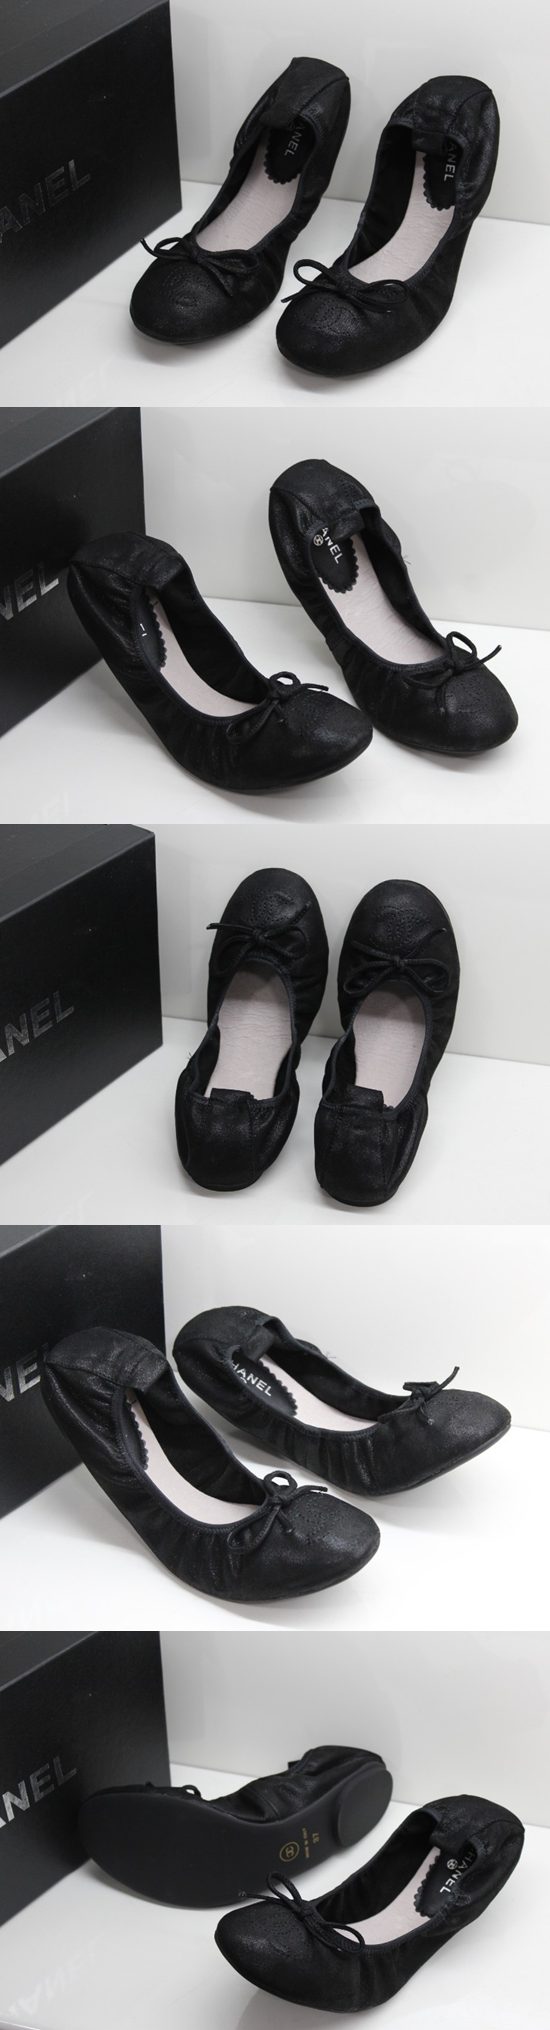 ブランド通販人気 CHANEL 靴 パンプス シャネル フラットシューズ スーパーブランドコピー CH8844激安屋-ブランドコピー